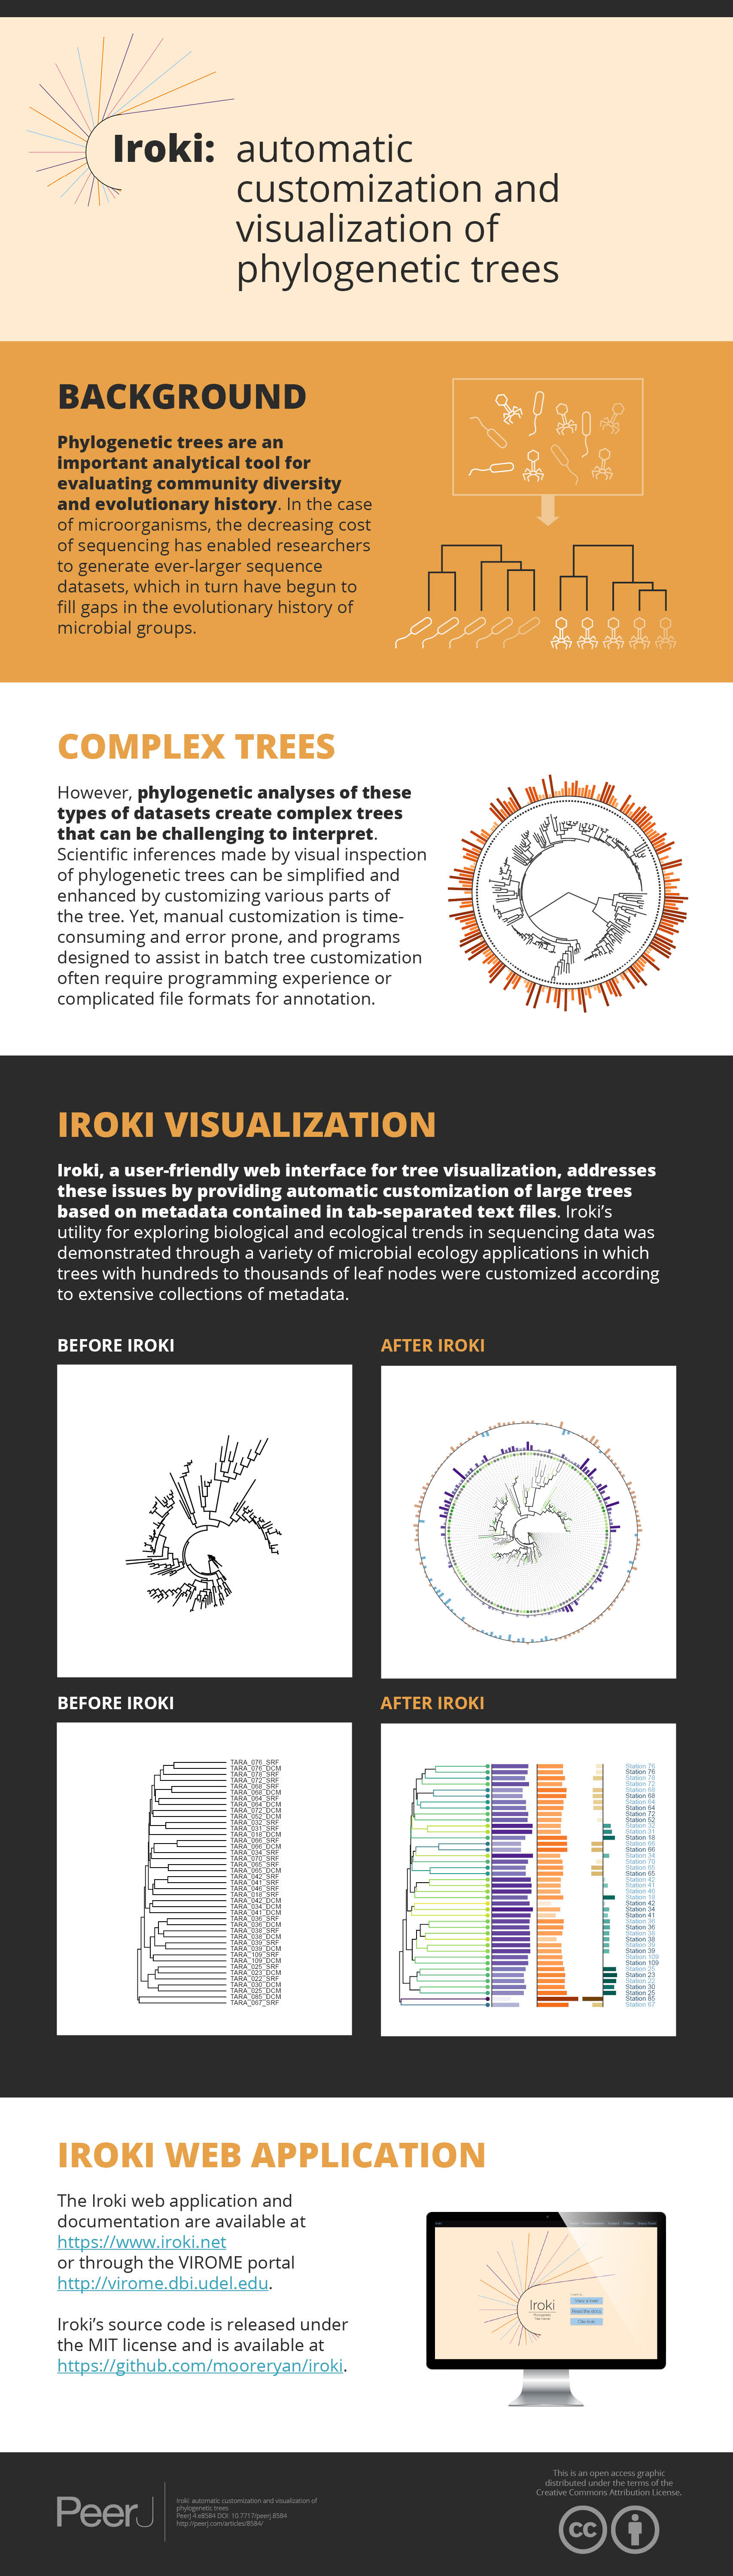 Iroki Automatic Customization And Visualization Of Phylogenetic Trees Peerj